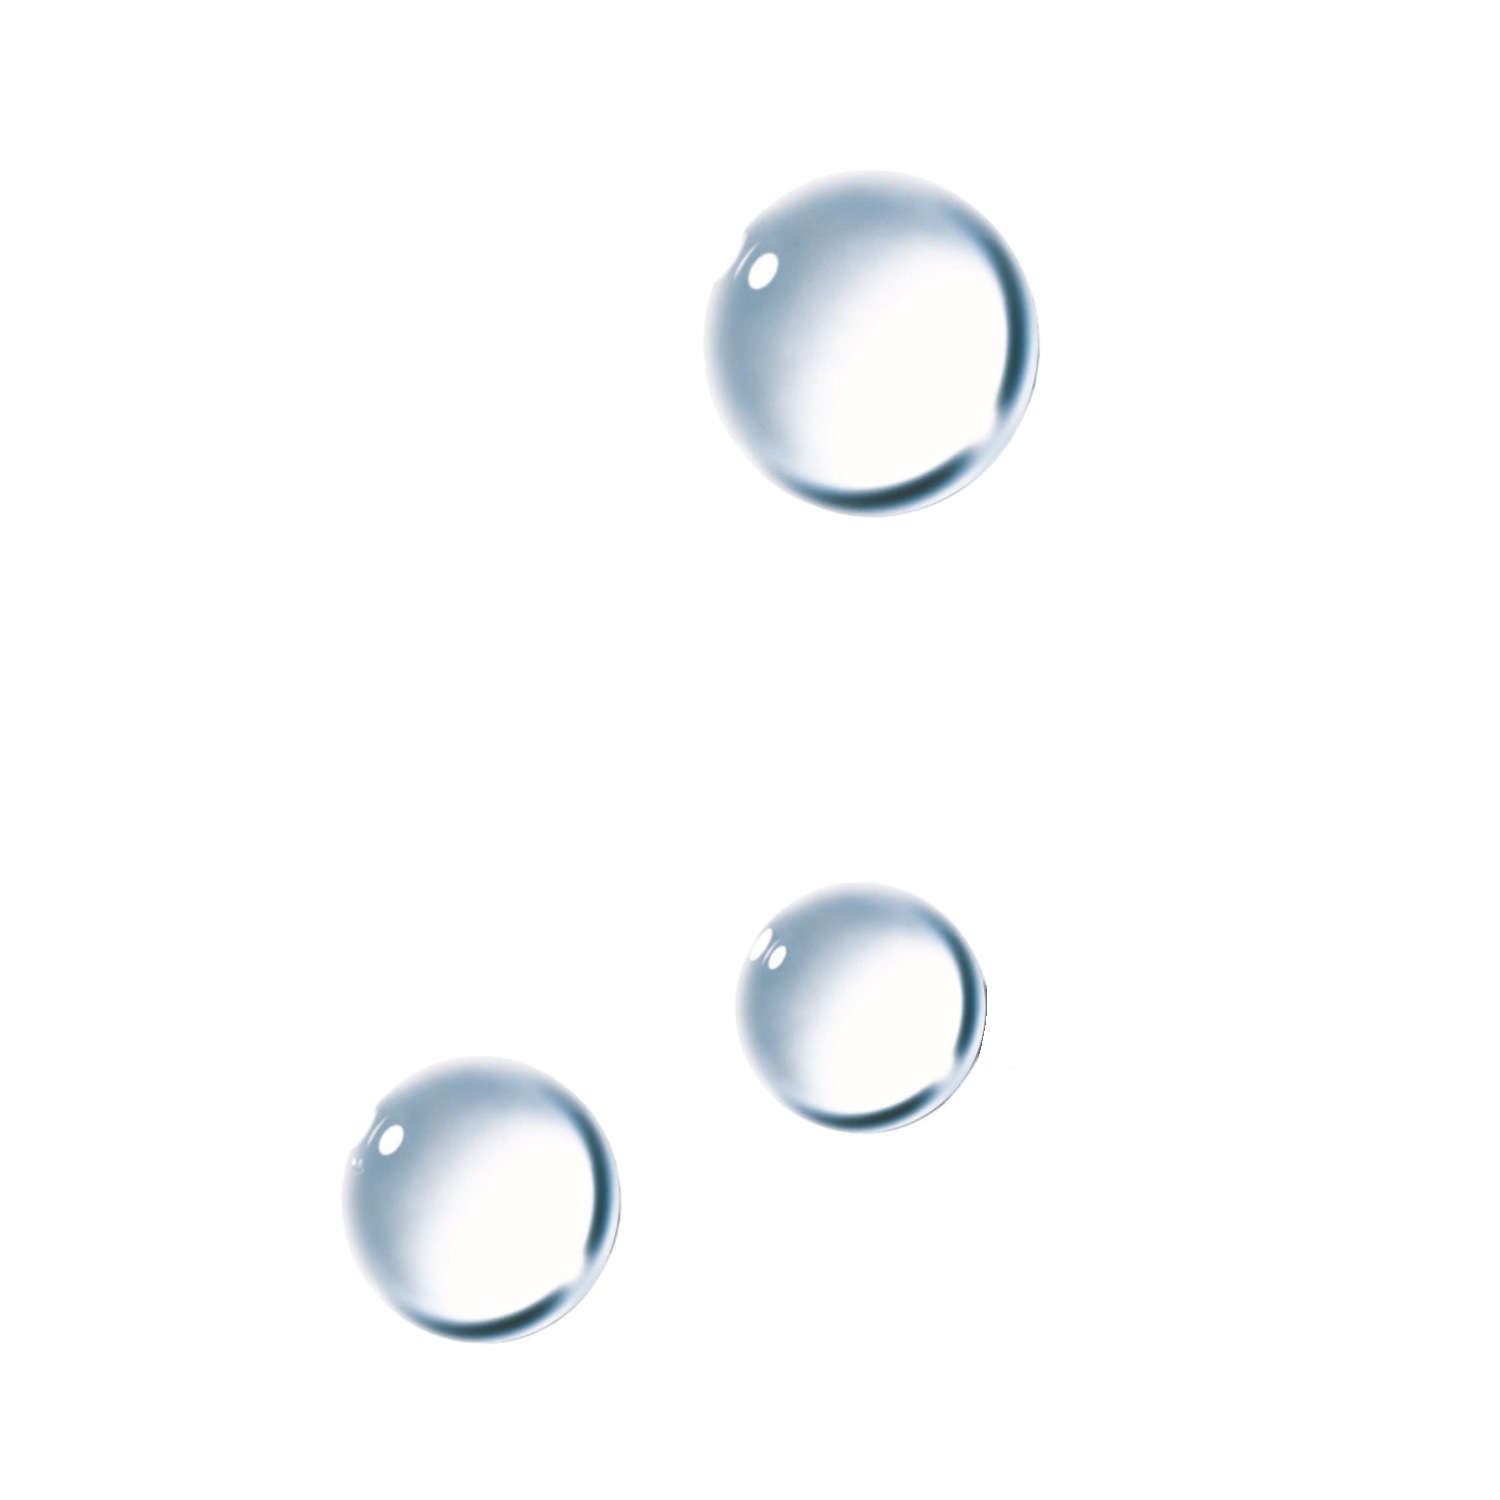 Ля Рош-Позе Ультра вода мицеллярная для чувствительной склонной к аллергии кожи 400мл ля рош позе эфаклар ультра вода мицеллярная для жирной проблемной кожи 400мл м2862404